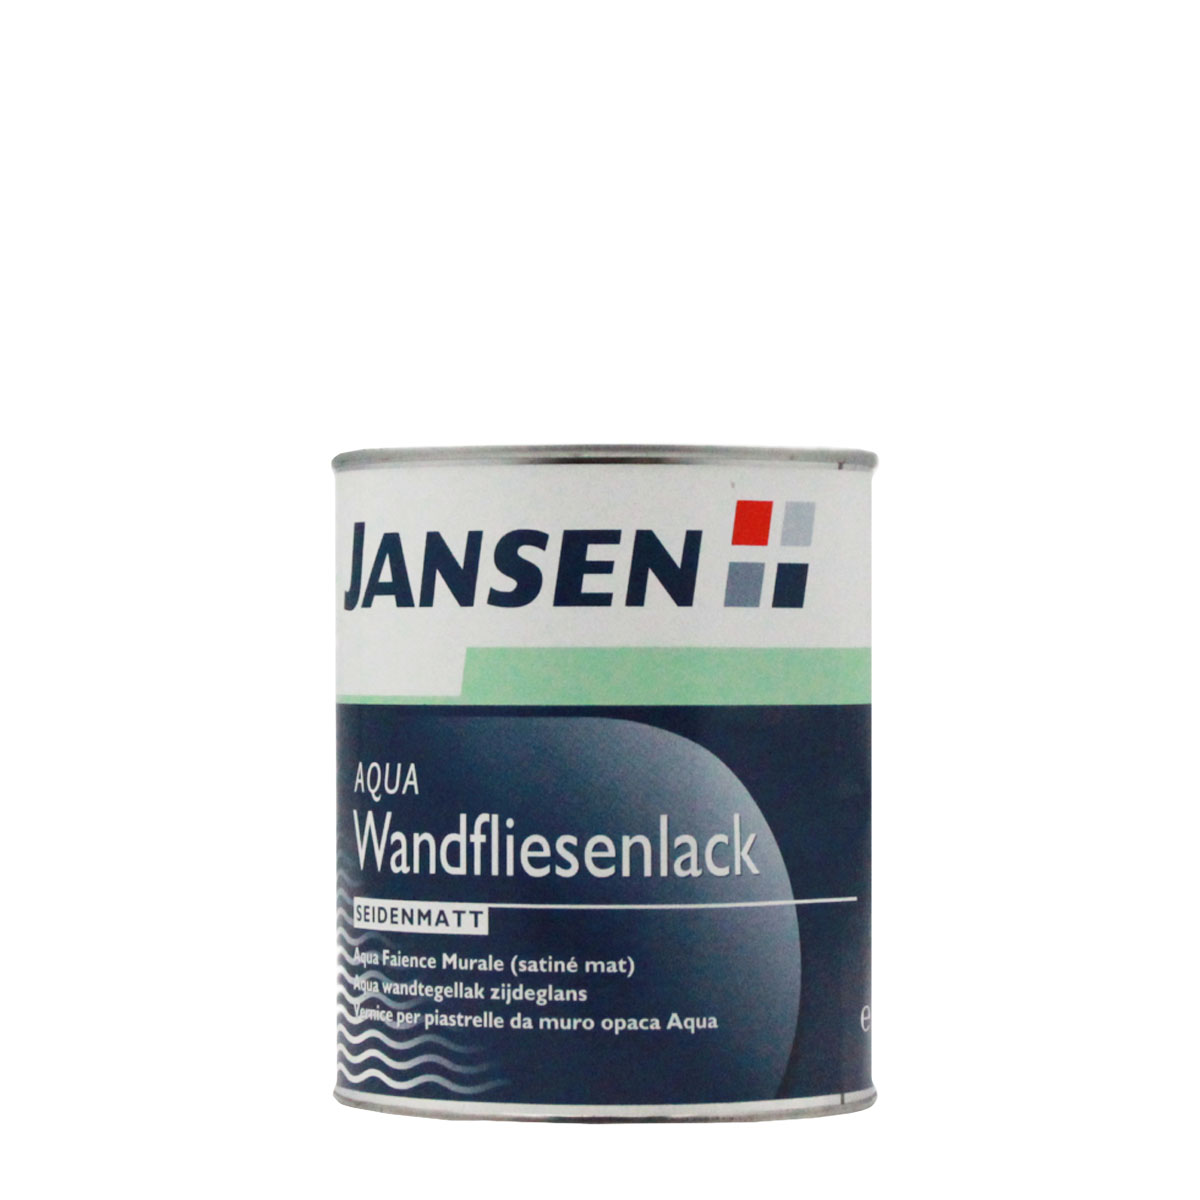 Jansen Aqua Wandfliesenlack 0,75L weiss, seidenmatt, Fliesenlack